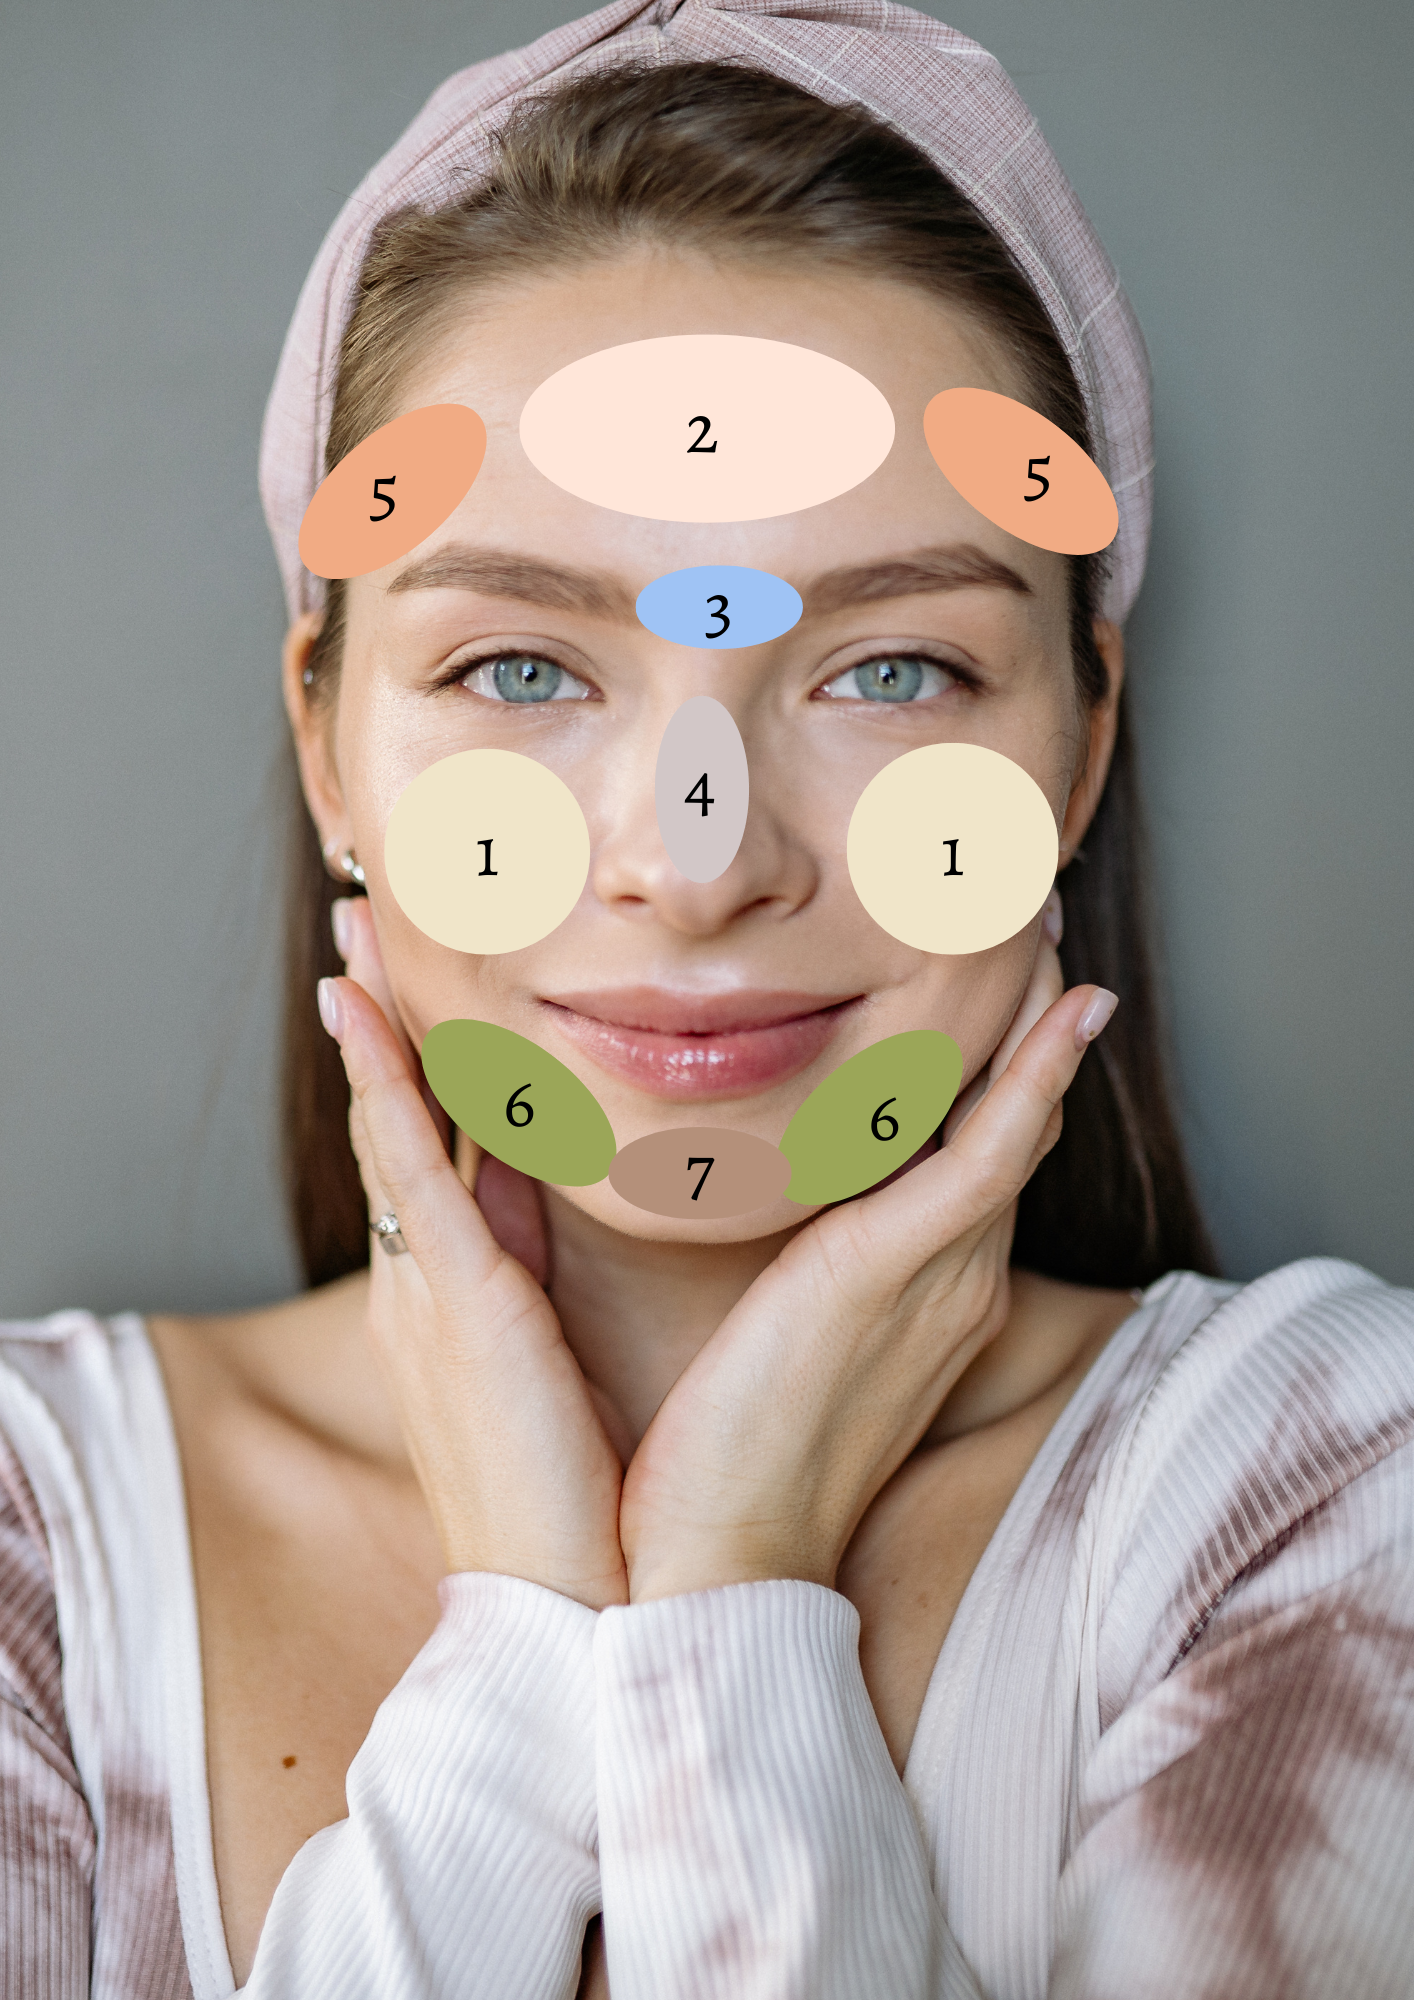 Acné visage : que révèlent les boutons selon la zone du visage ? – The  Cosmetist